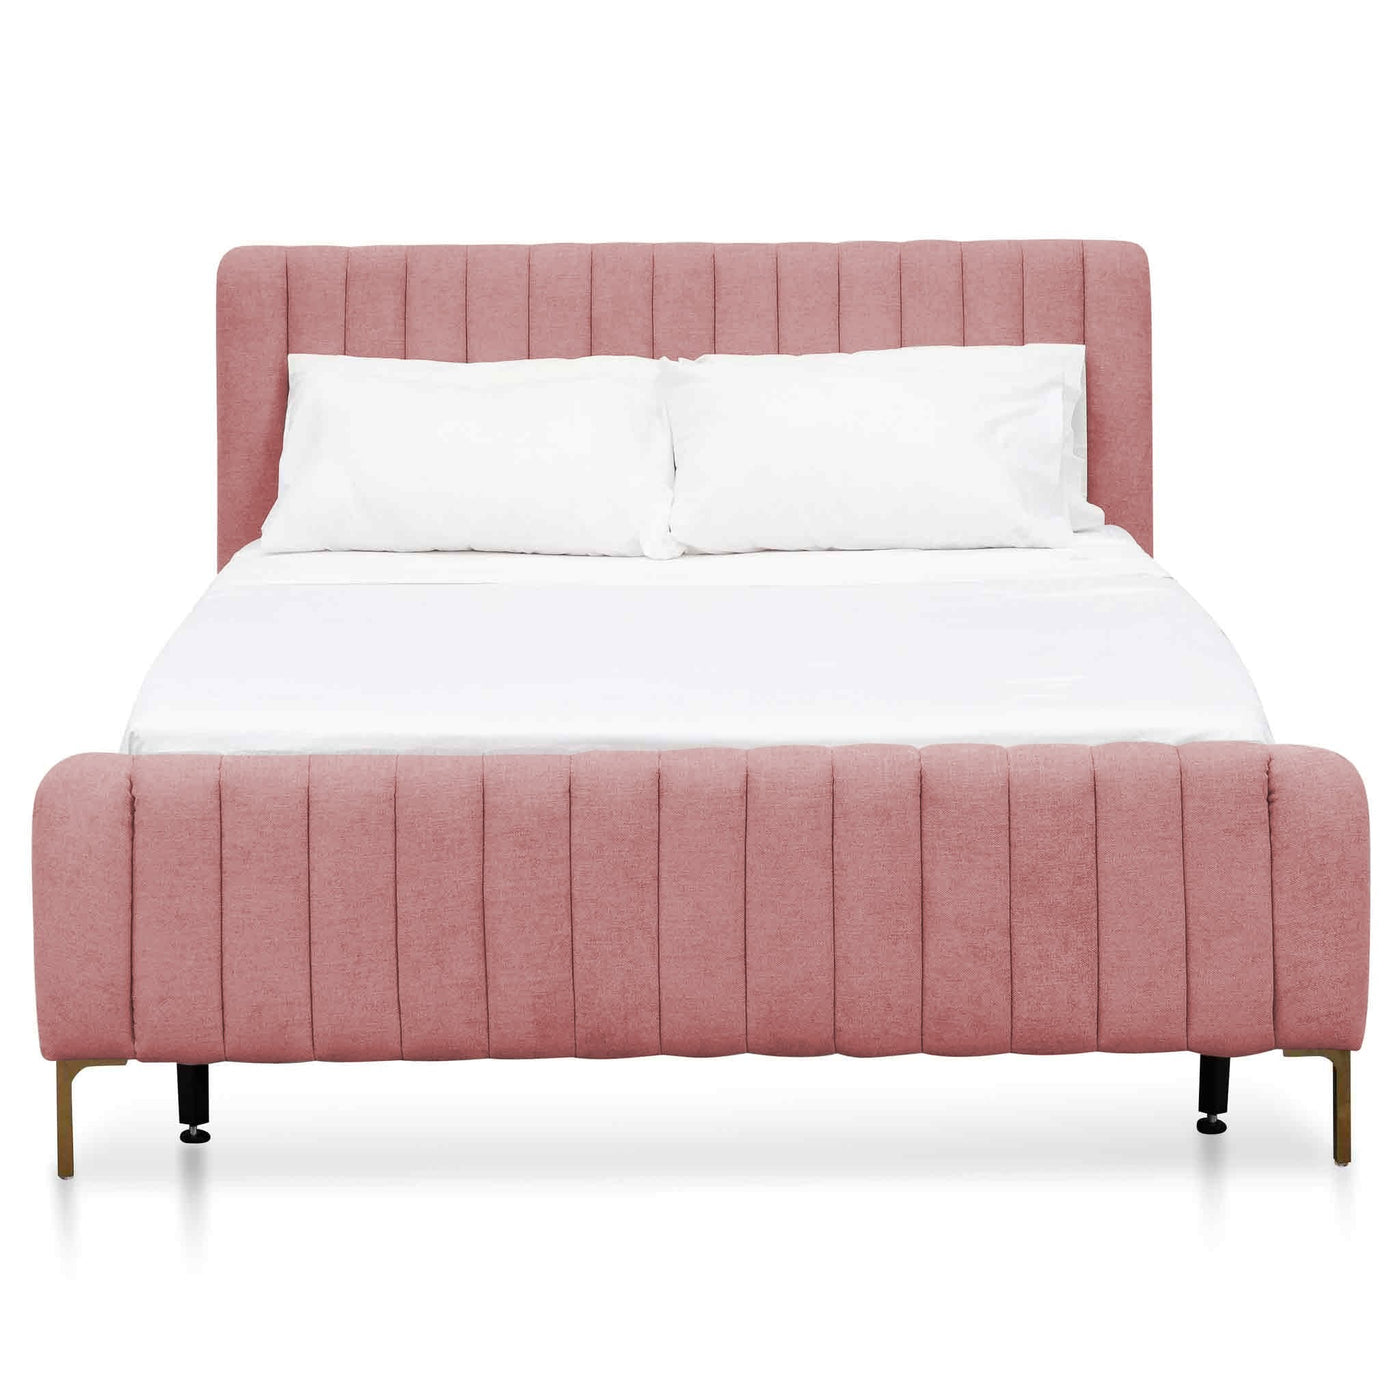 Queen Sized Bed Frame - Blush Peach Velvet